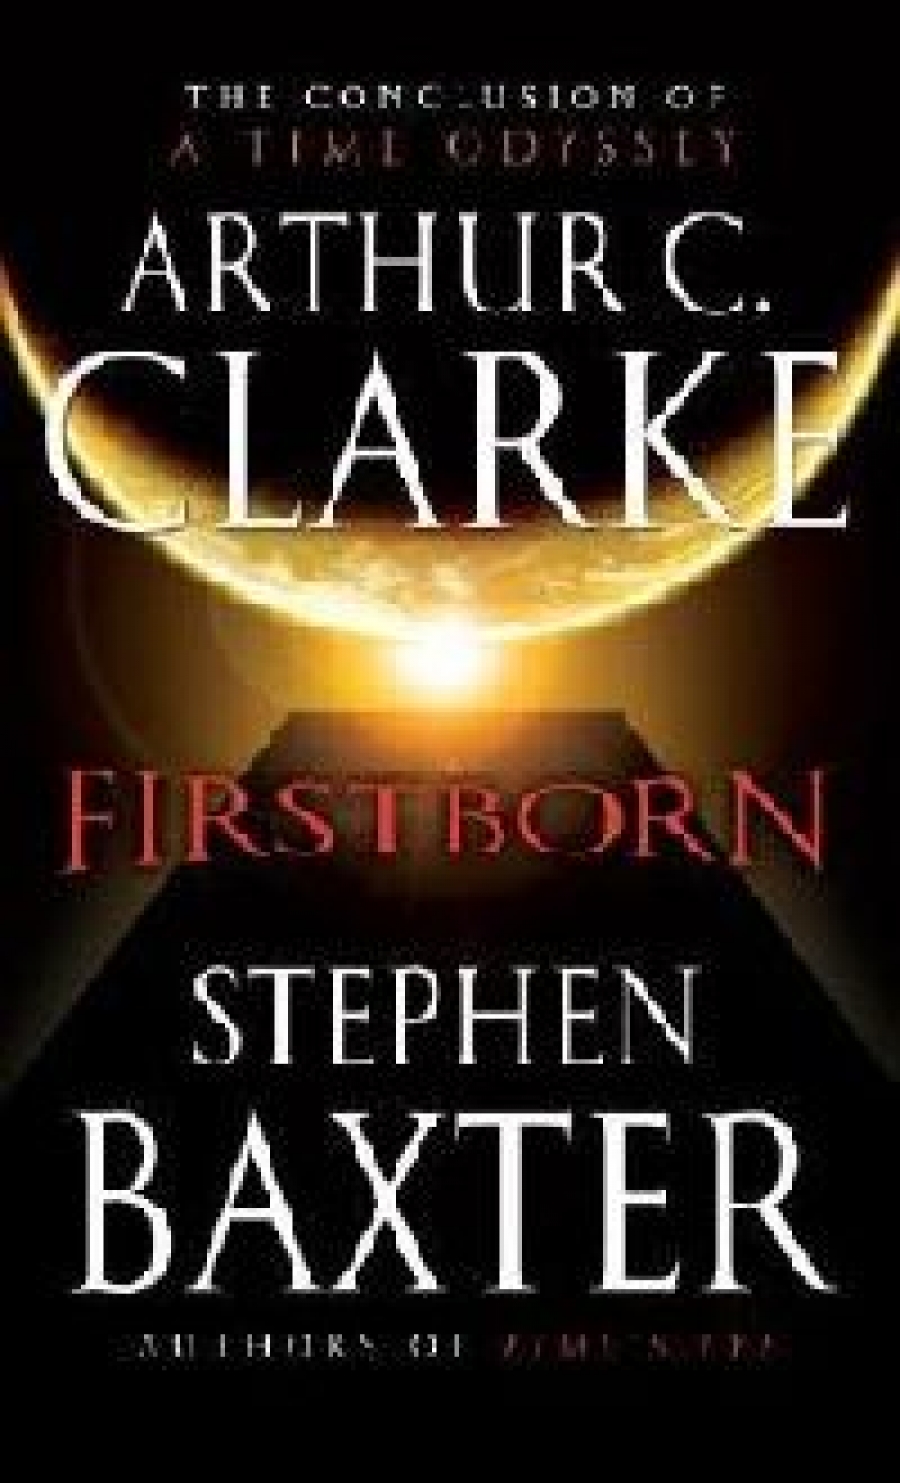 A.C.Clarke & Stephen Baxter FirstBorn 